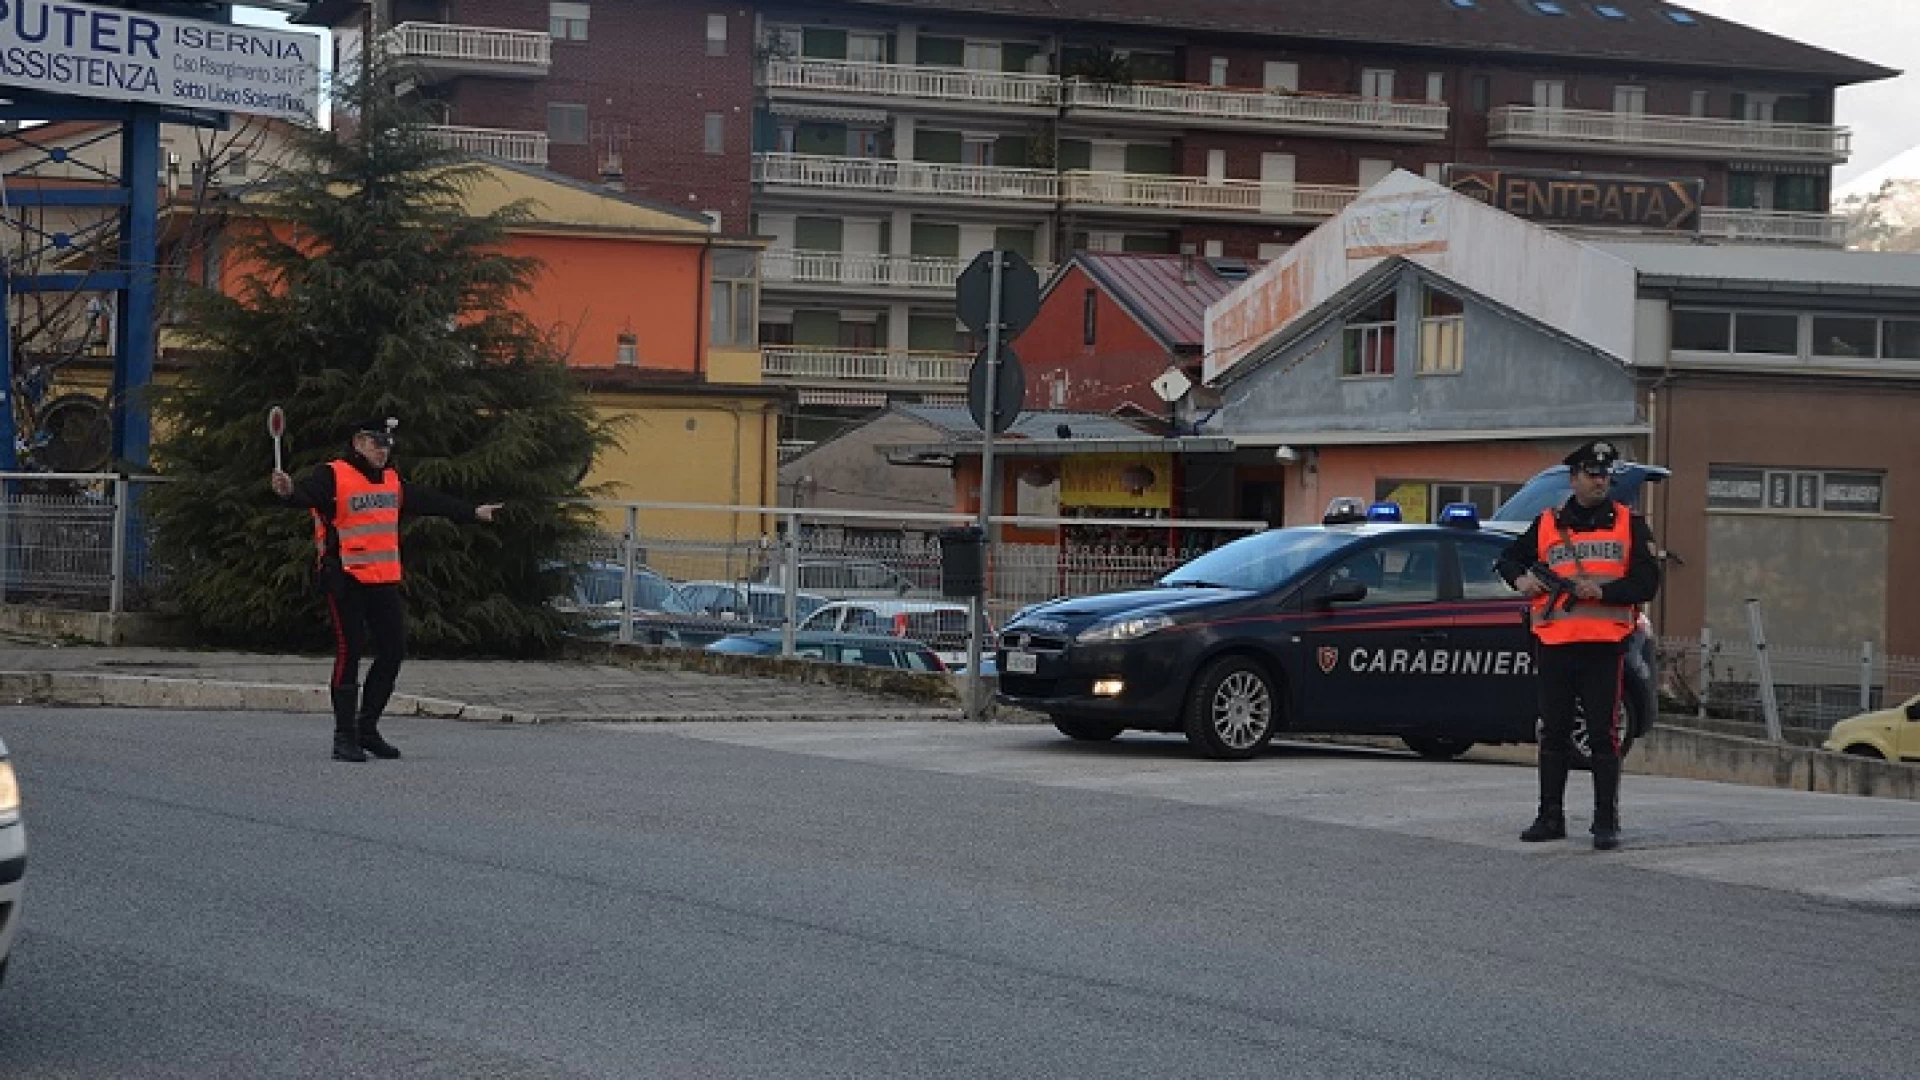 Isernia: Evade dai domiciliari e aggredisce i Carabinieri. Arrestata nigeriana